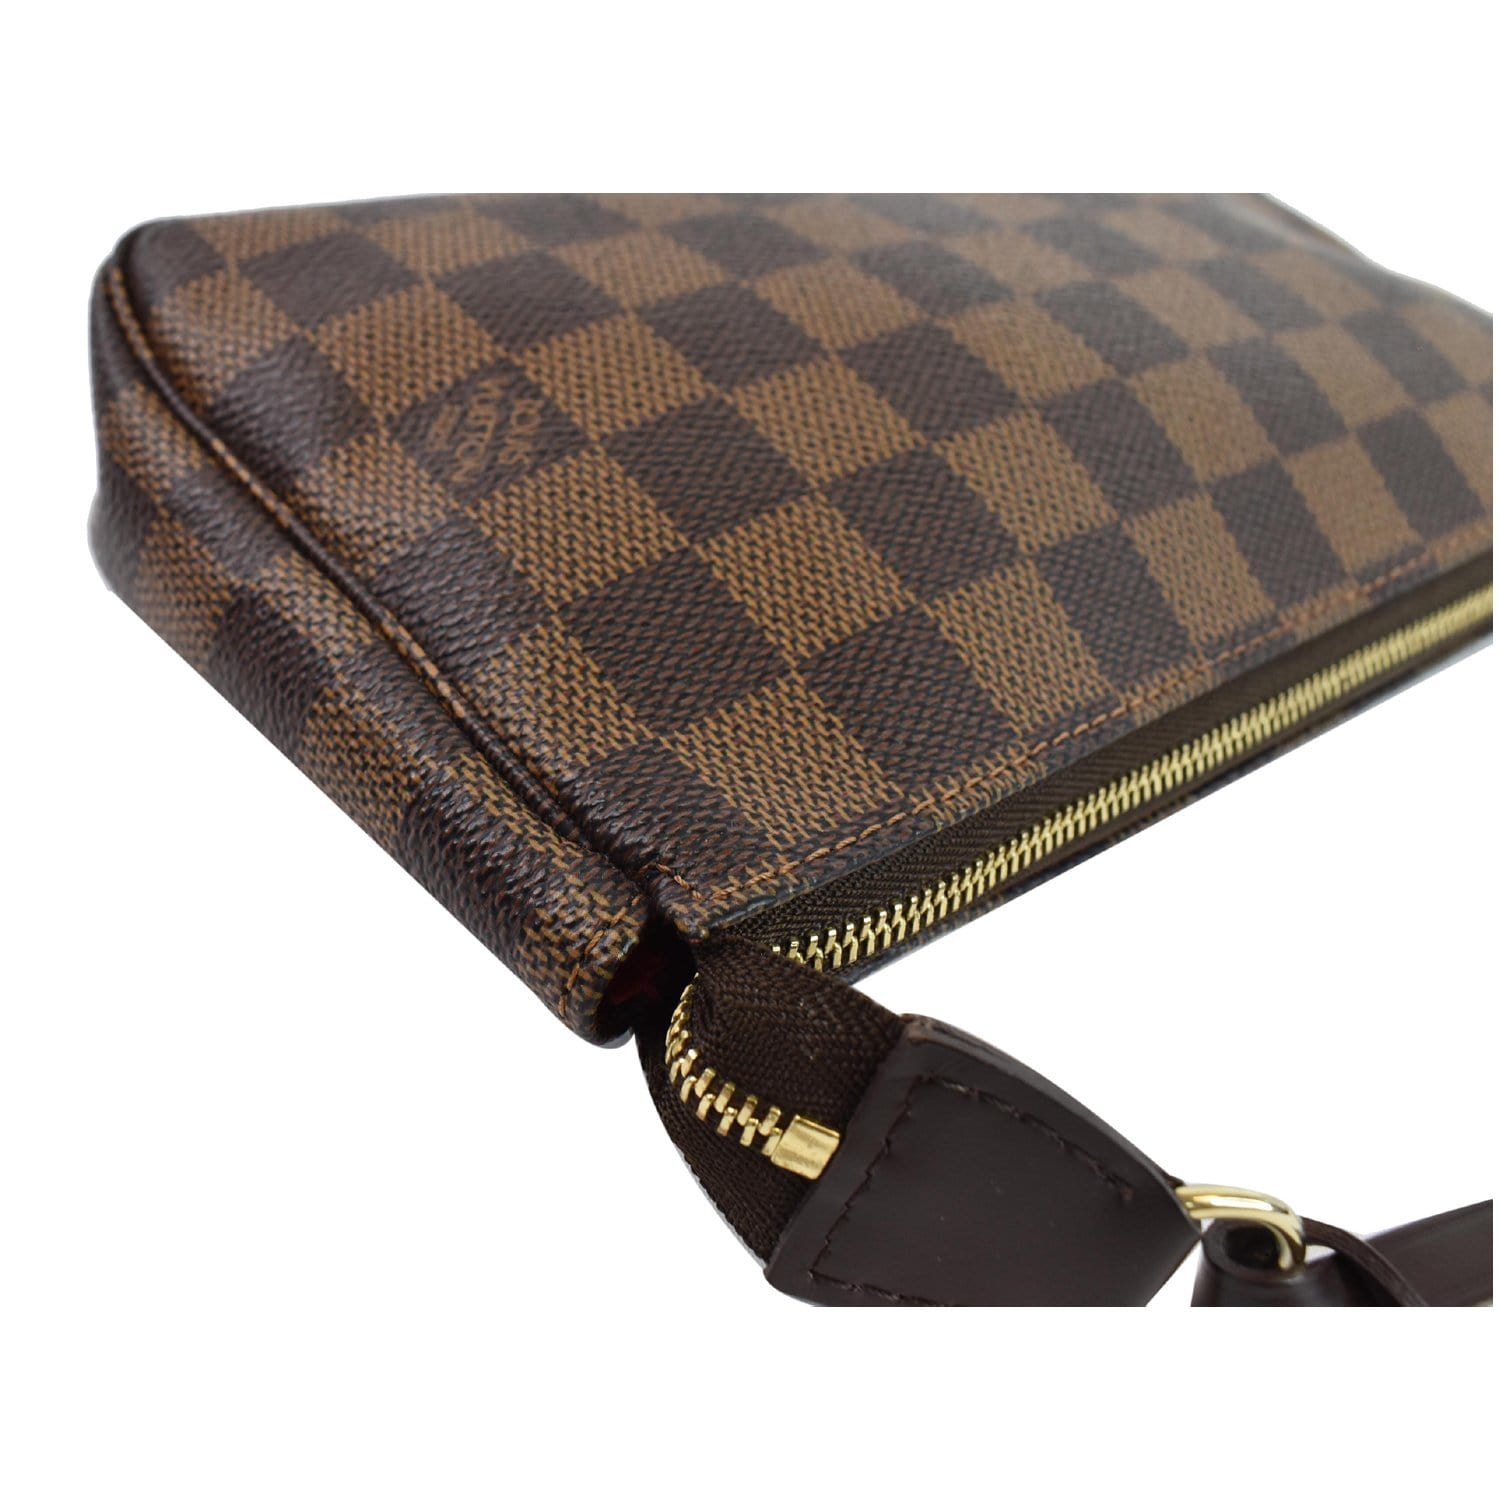 Louis Vuitton Limited Edition Damier Canvas Pochette Bag